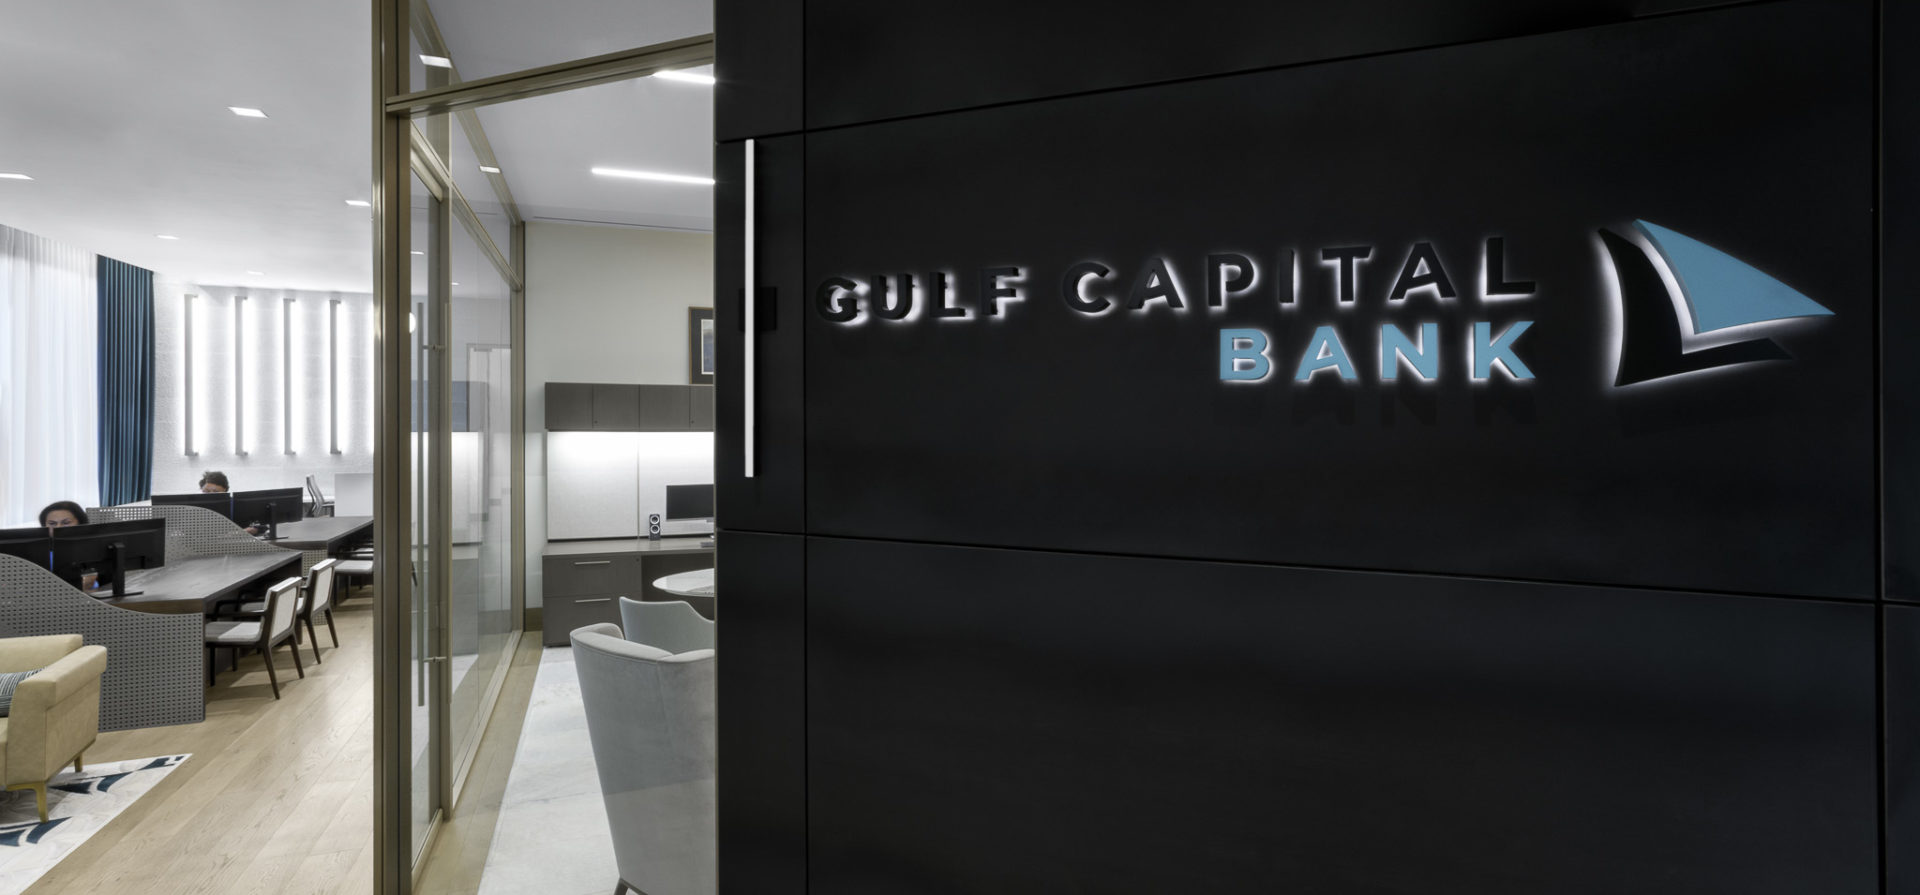 Gulf Capital Bank